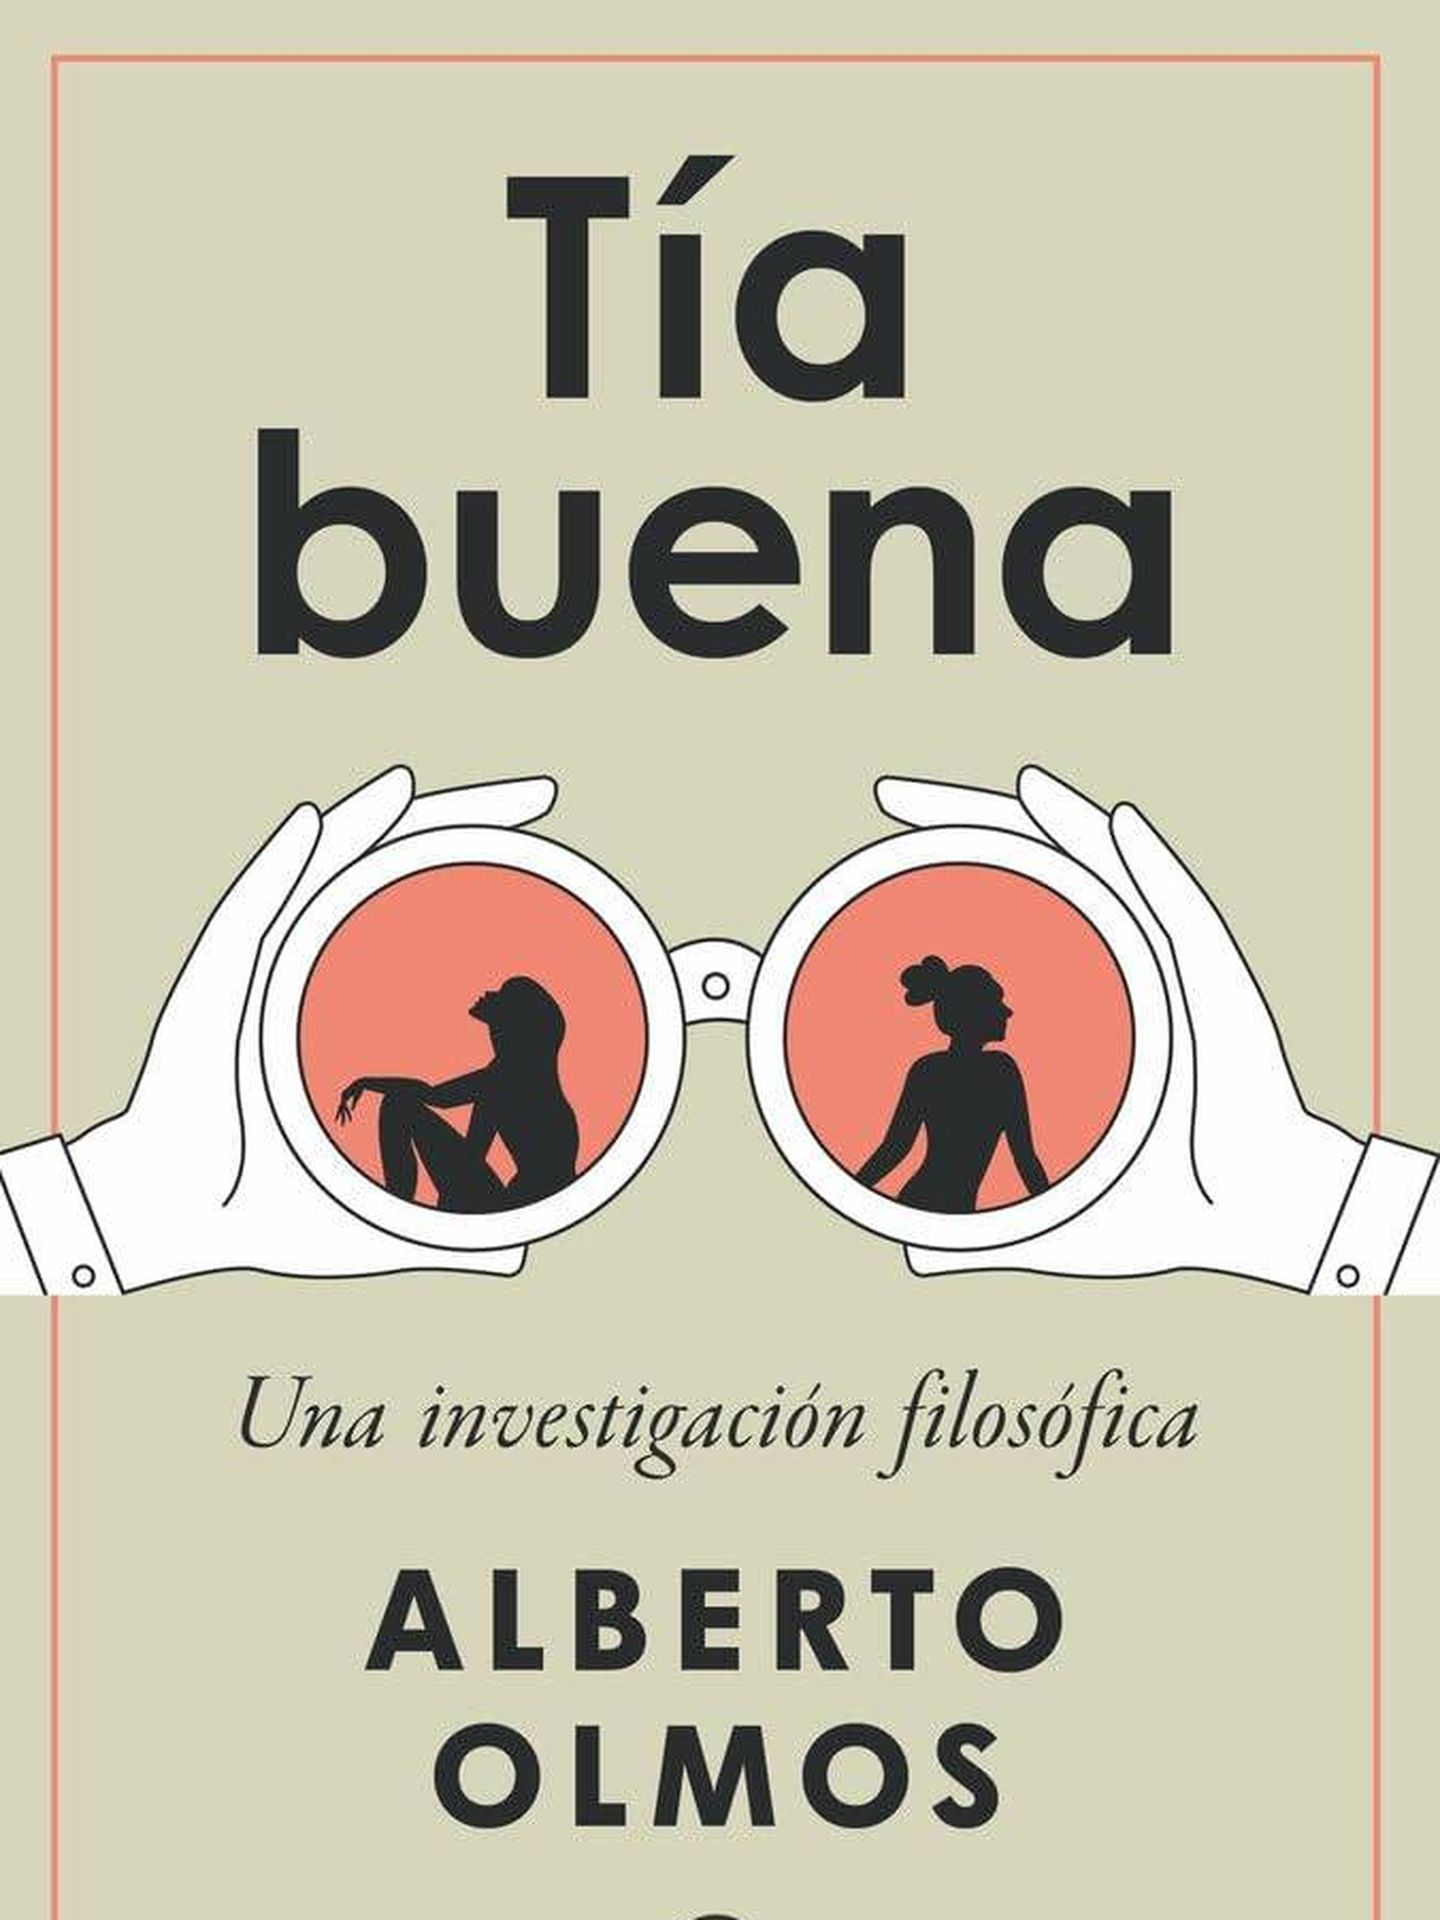 Portada de 'Tía buena', el nuevo ensayo del escritor y columnista Alberto Olmos.